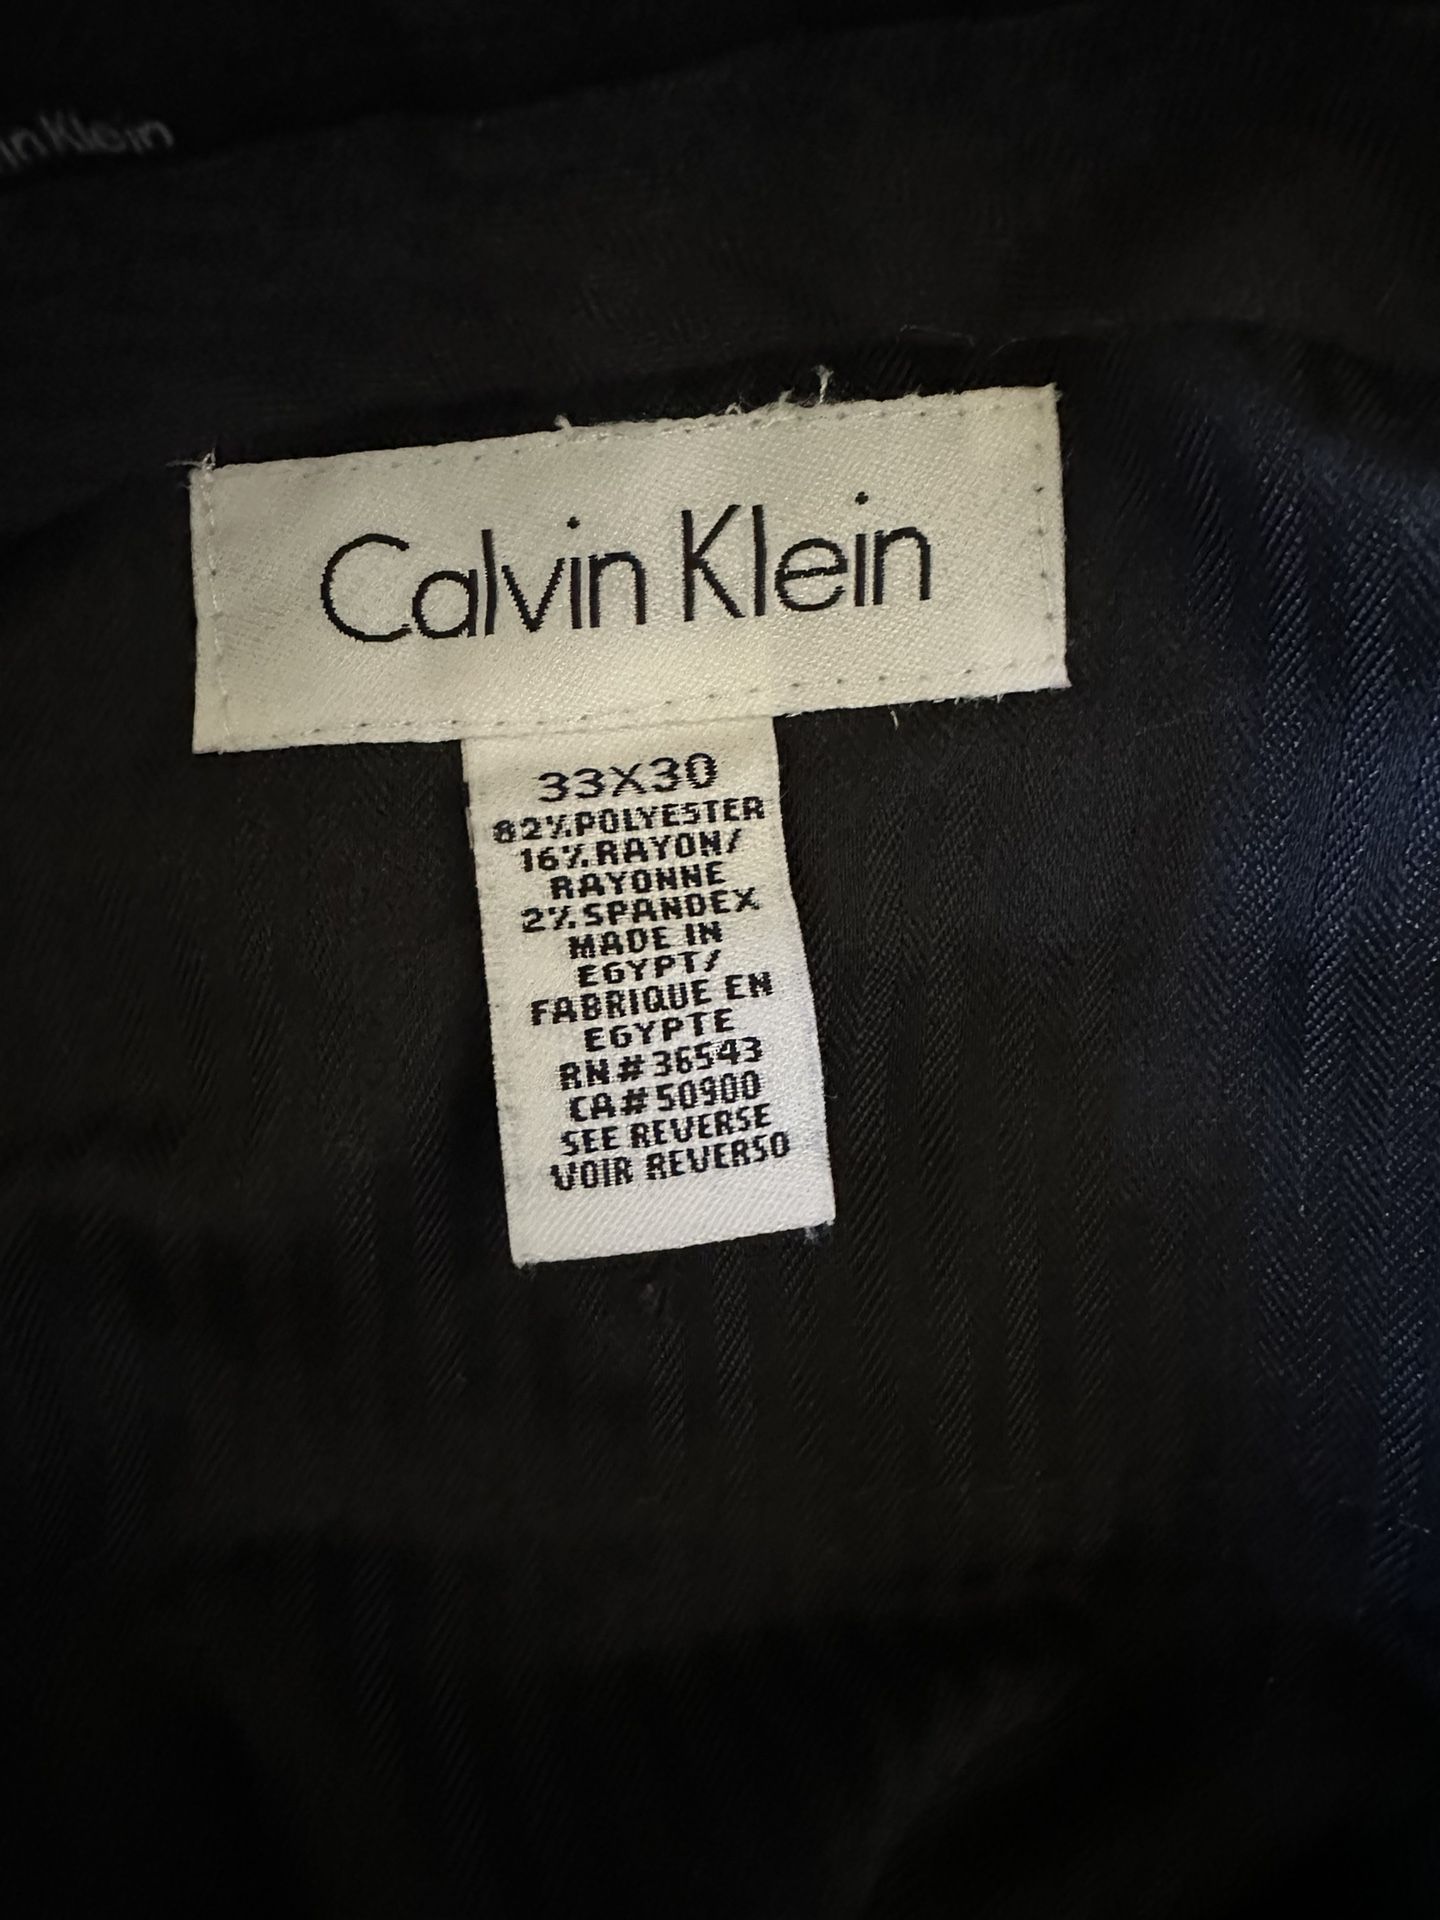 Calvin Klein 33X30 82/POLYESTER 167.